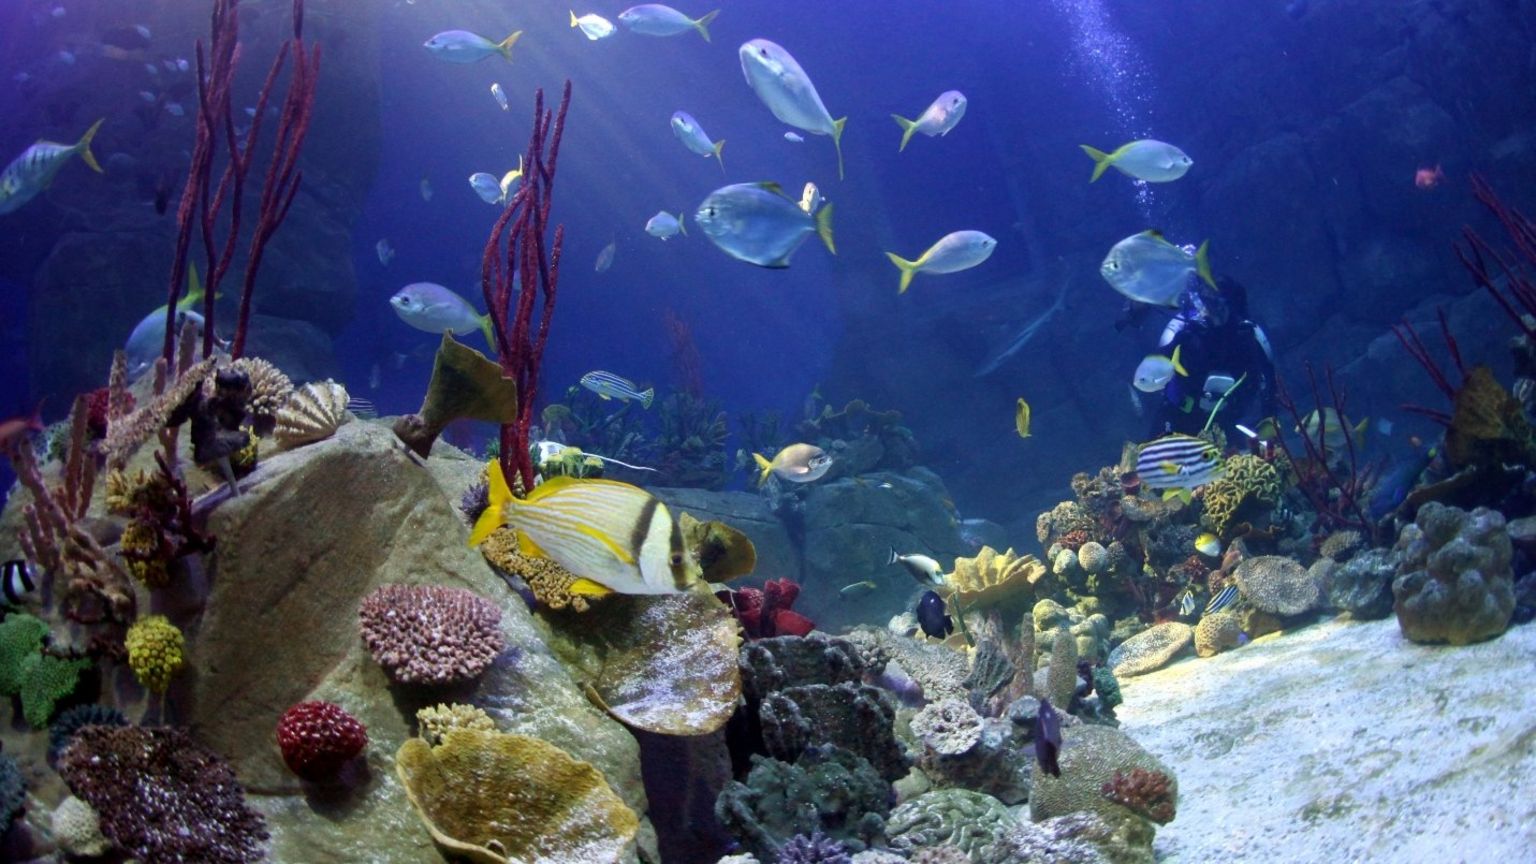 Coral seas aquarium tank (Image courtesy of the National Marine Aquarium)